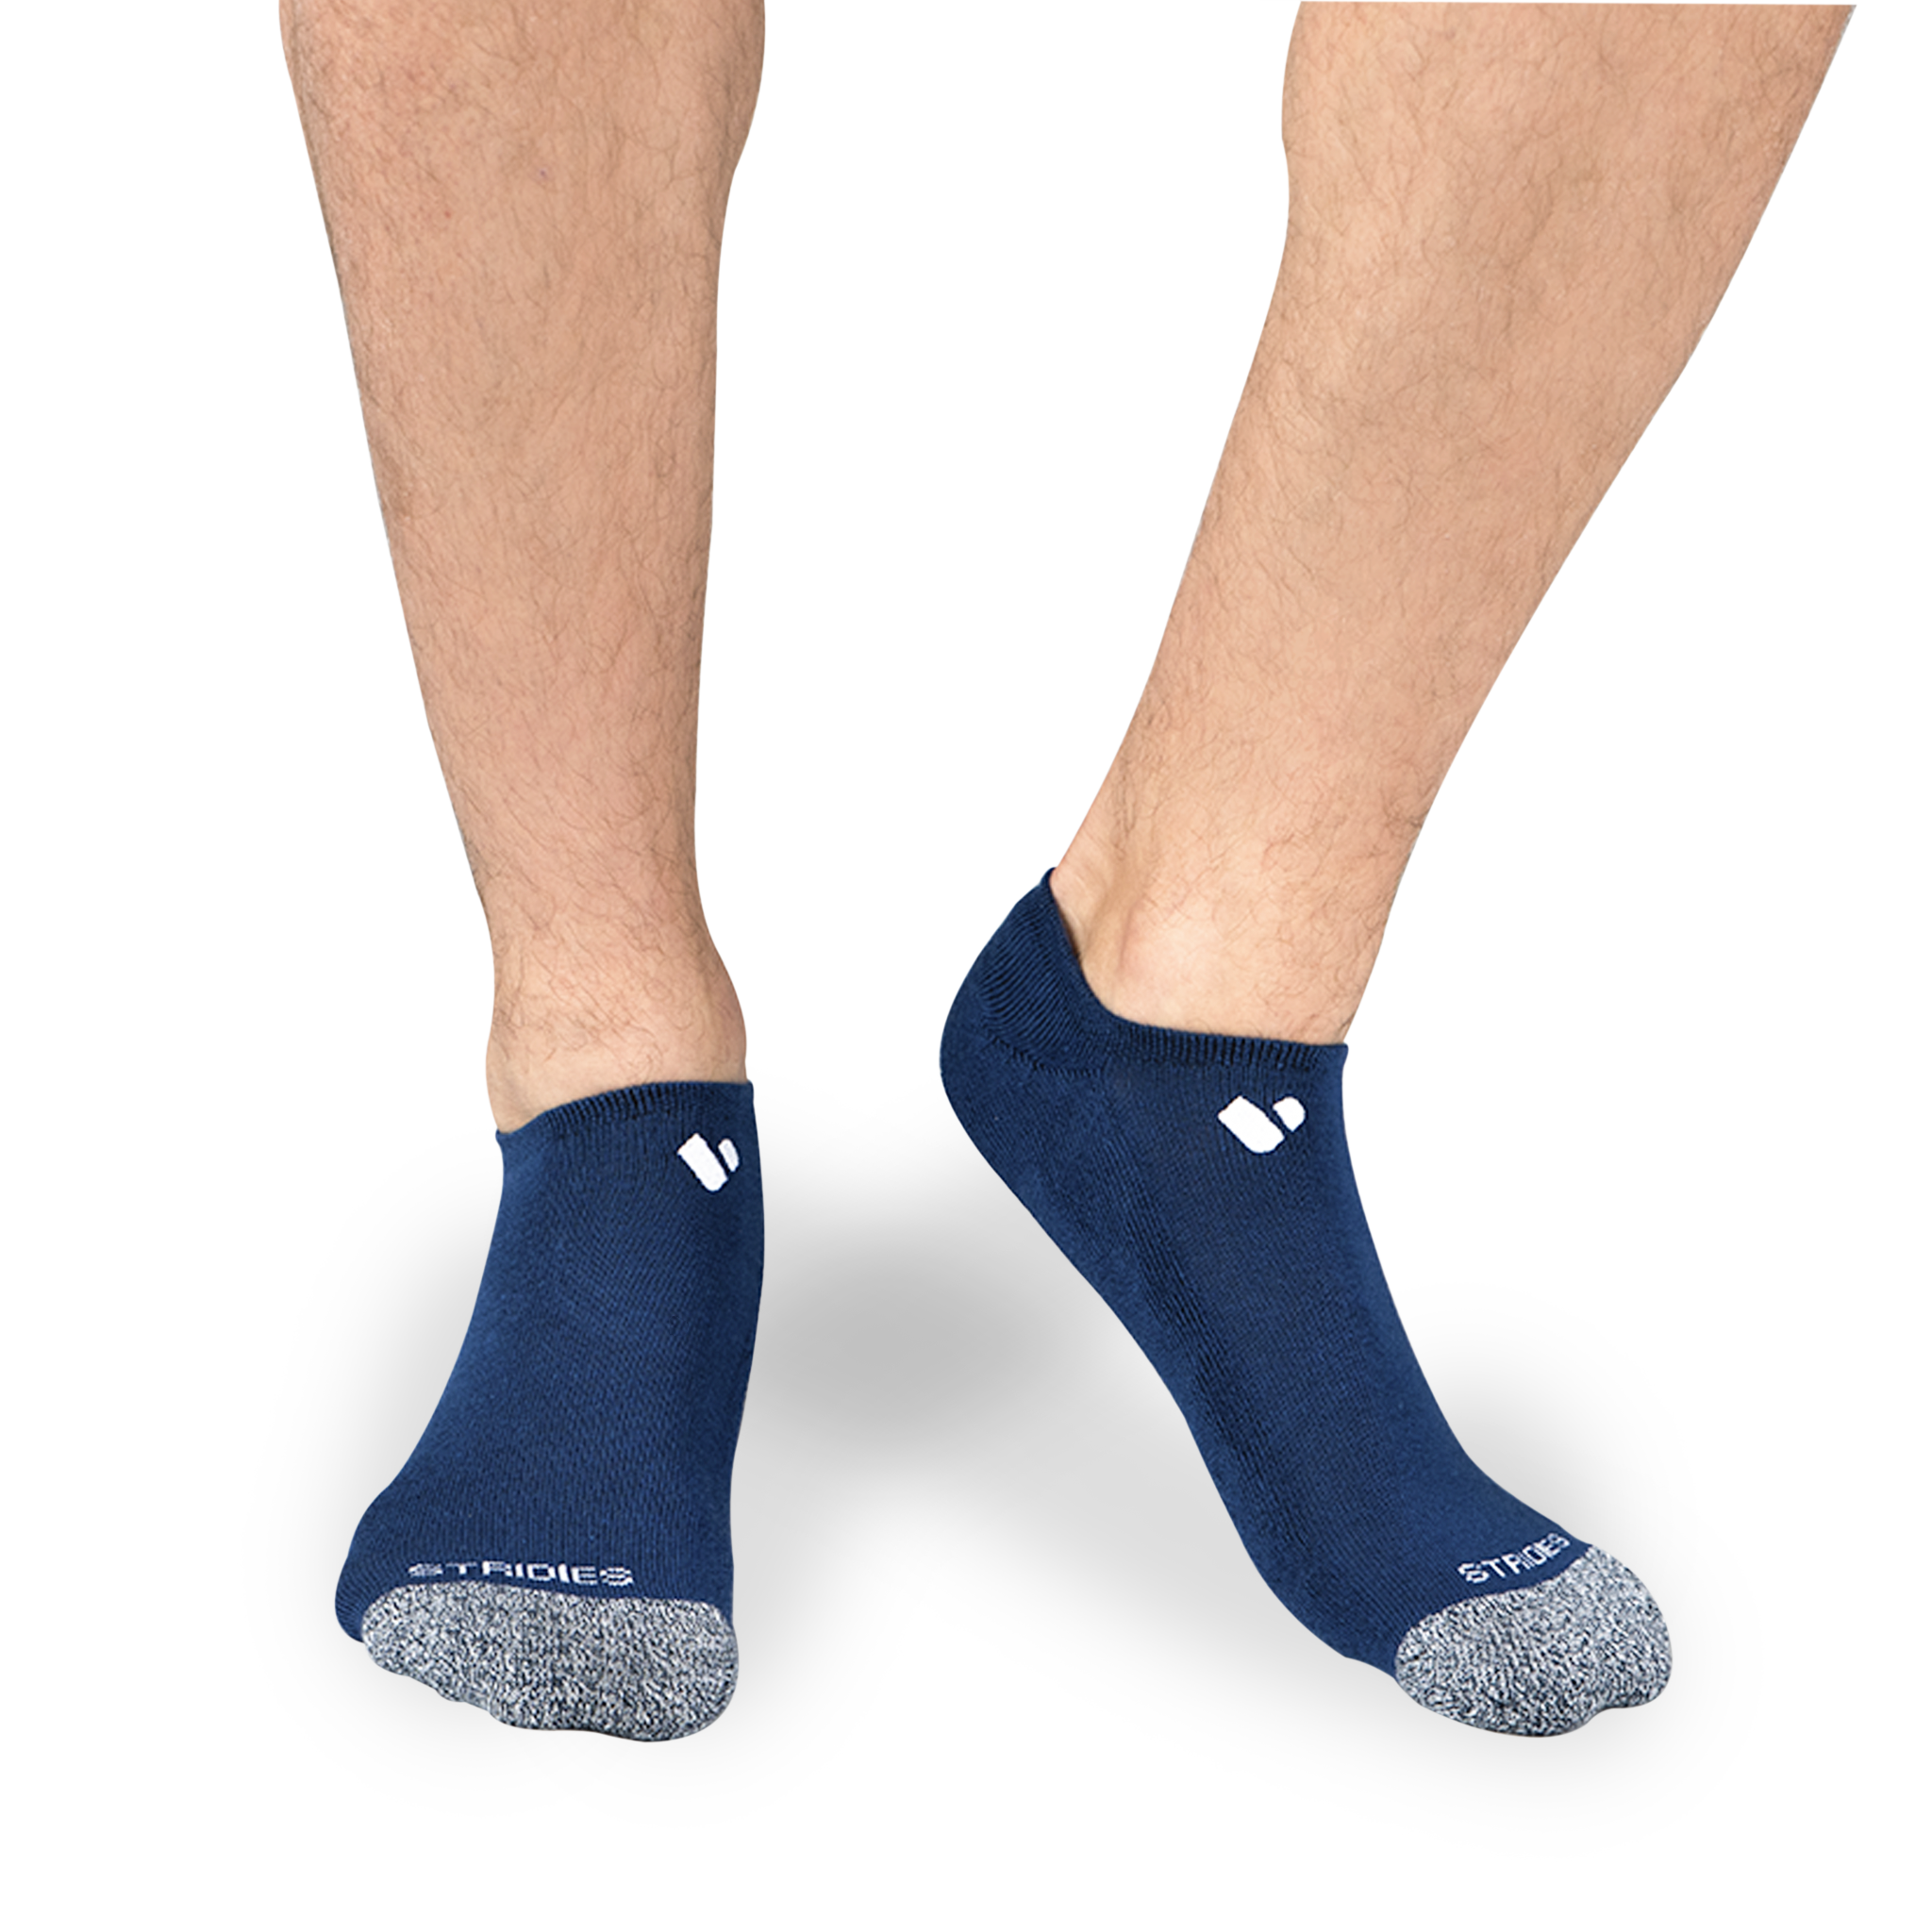 mens navy ankle socks